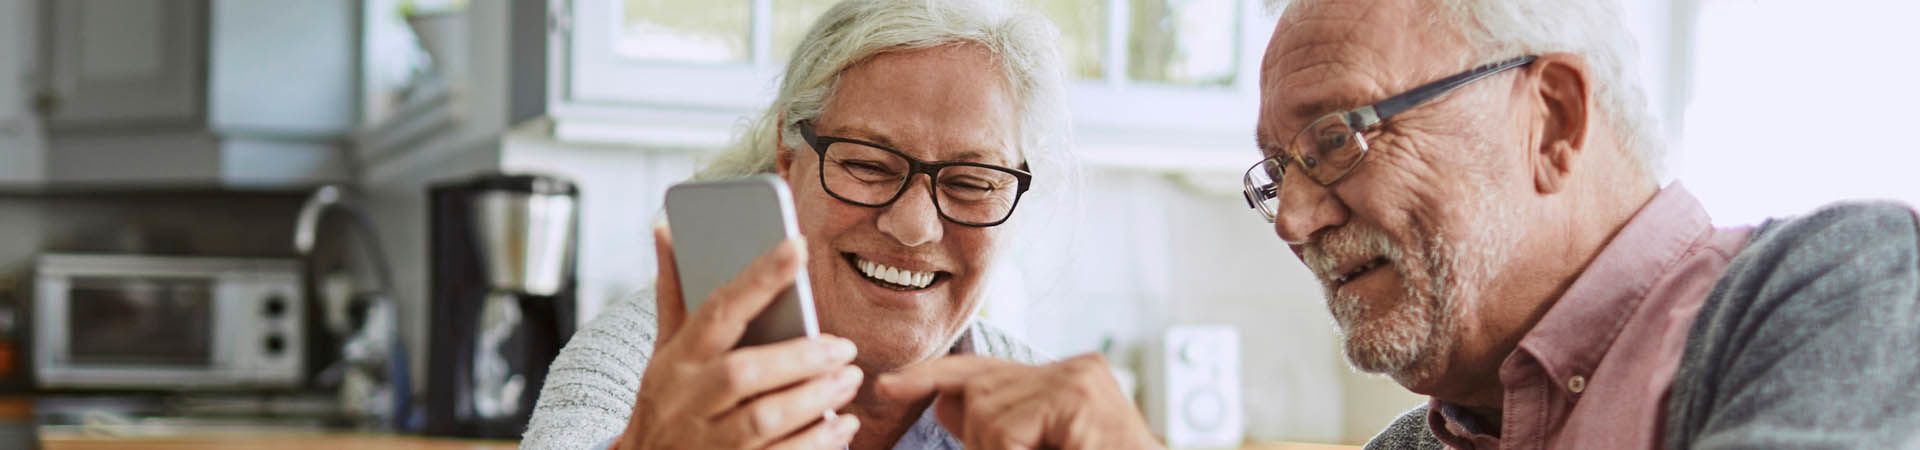 Smartphone pour sénior : un couple de personnes âgées en chat vidéo sur un téléphone portable.